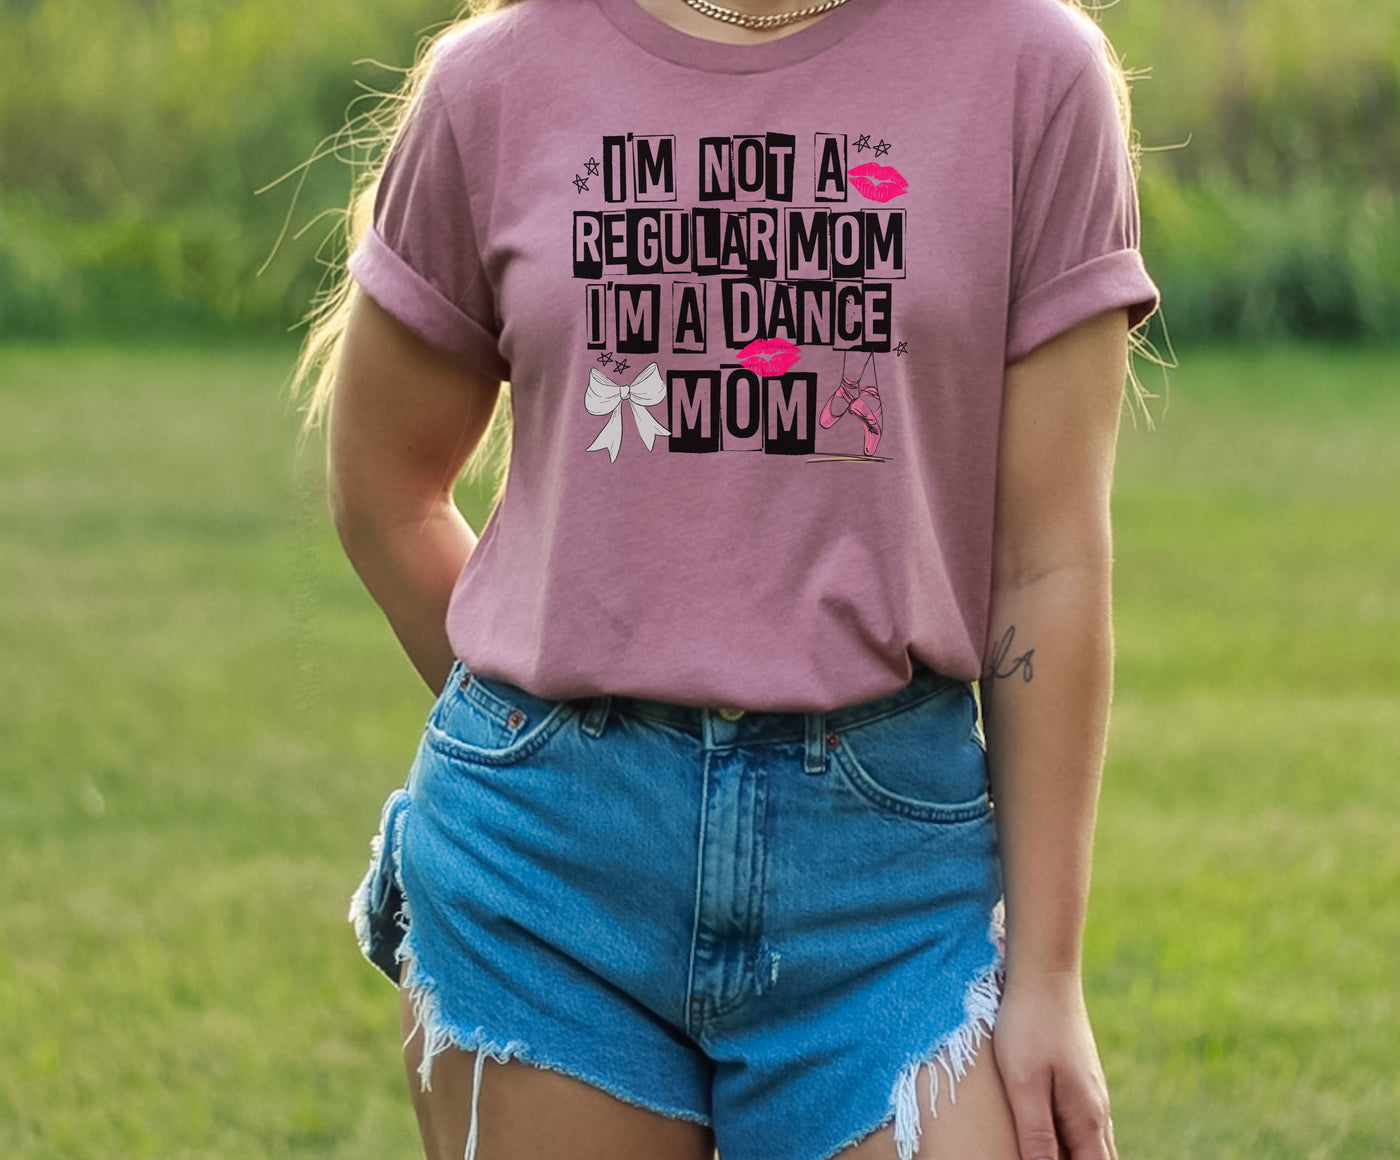 I’m not a regular mom, I’m a dance mom (RTS 1/16)